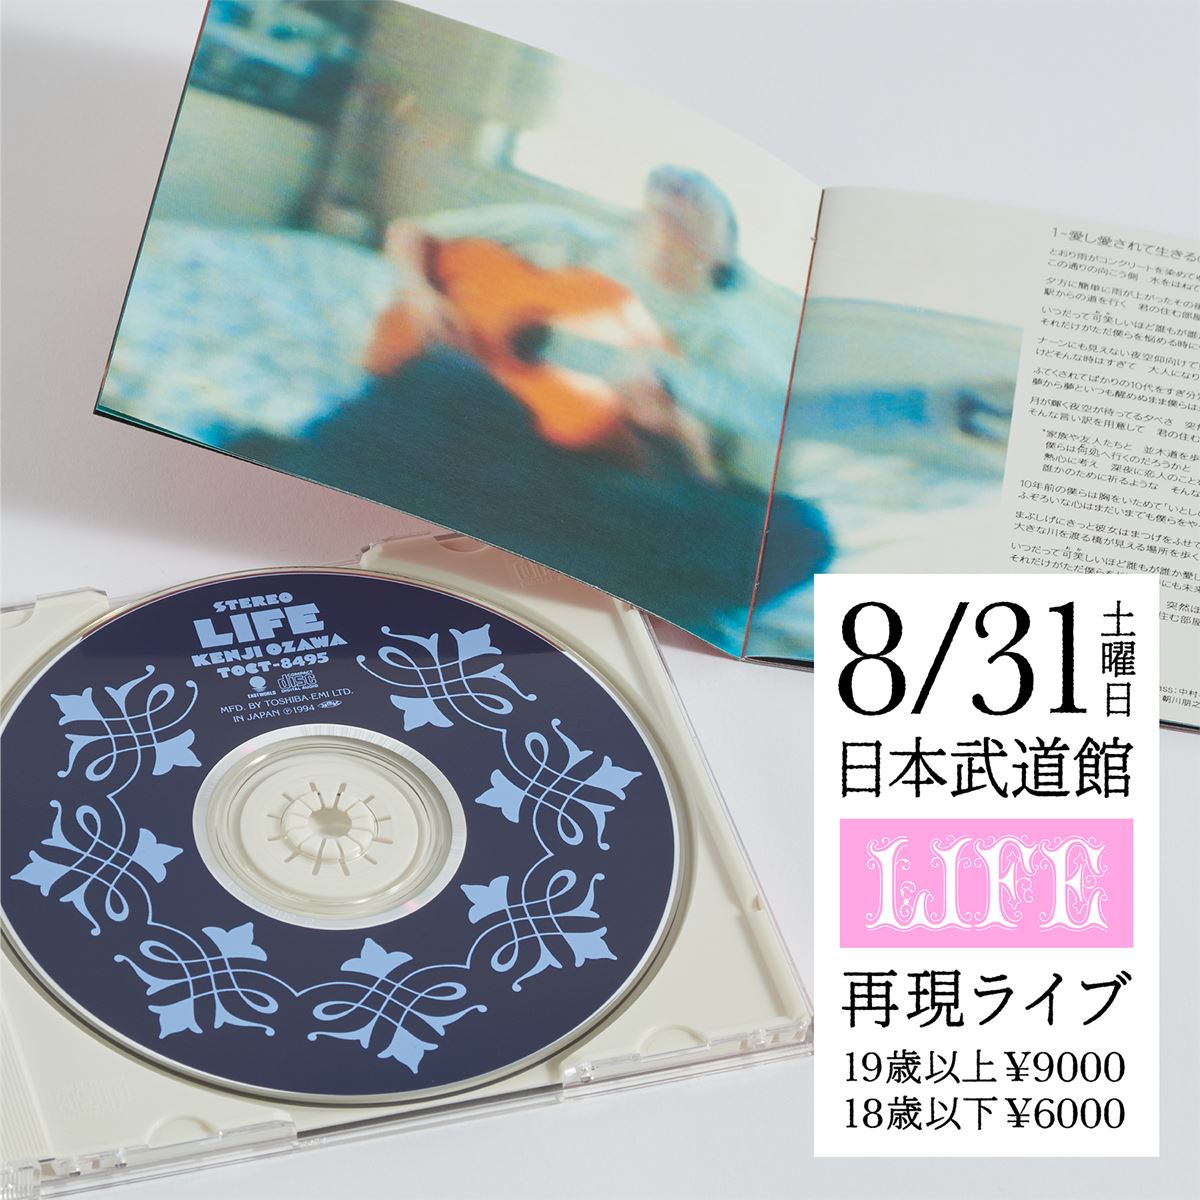 小沢健二、アルバム『LIFE』の再現ライブ開催決定当時のレコーディングメンバーと機材で全曲演奏